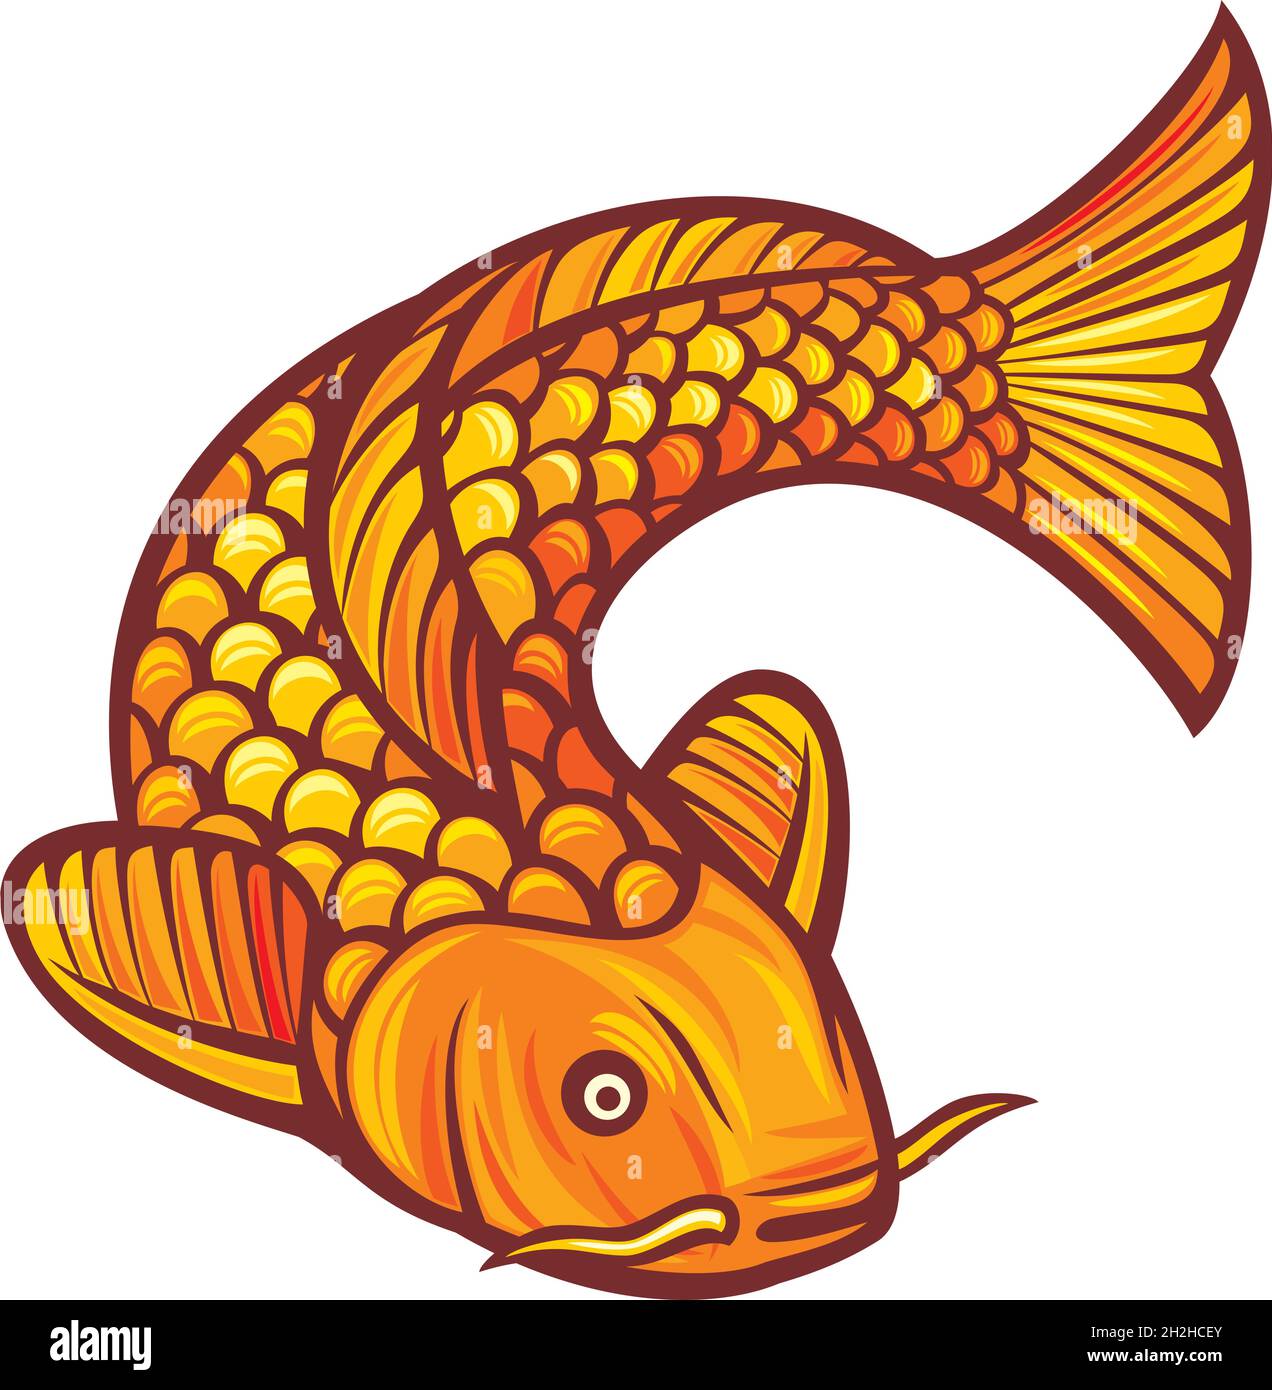 Illustration vectorielle d'un poisson carpe koï d'inspiration japonaise ou chinoise Illustration de Vecteur